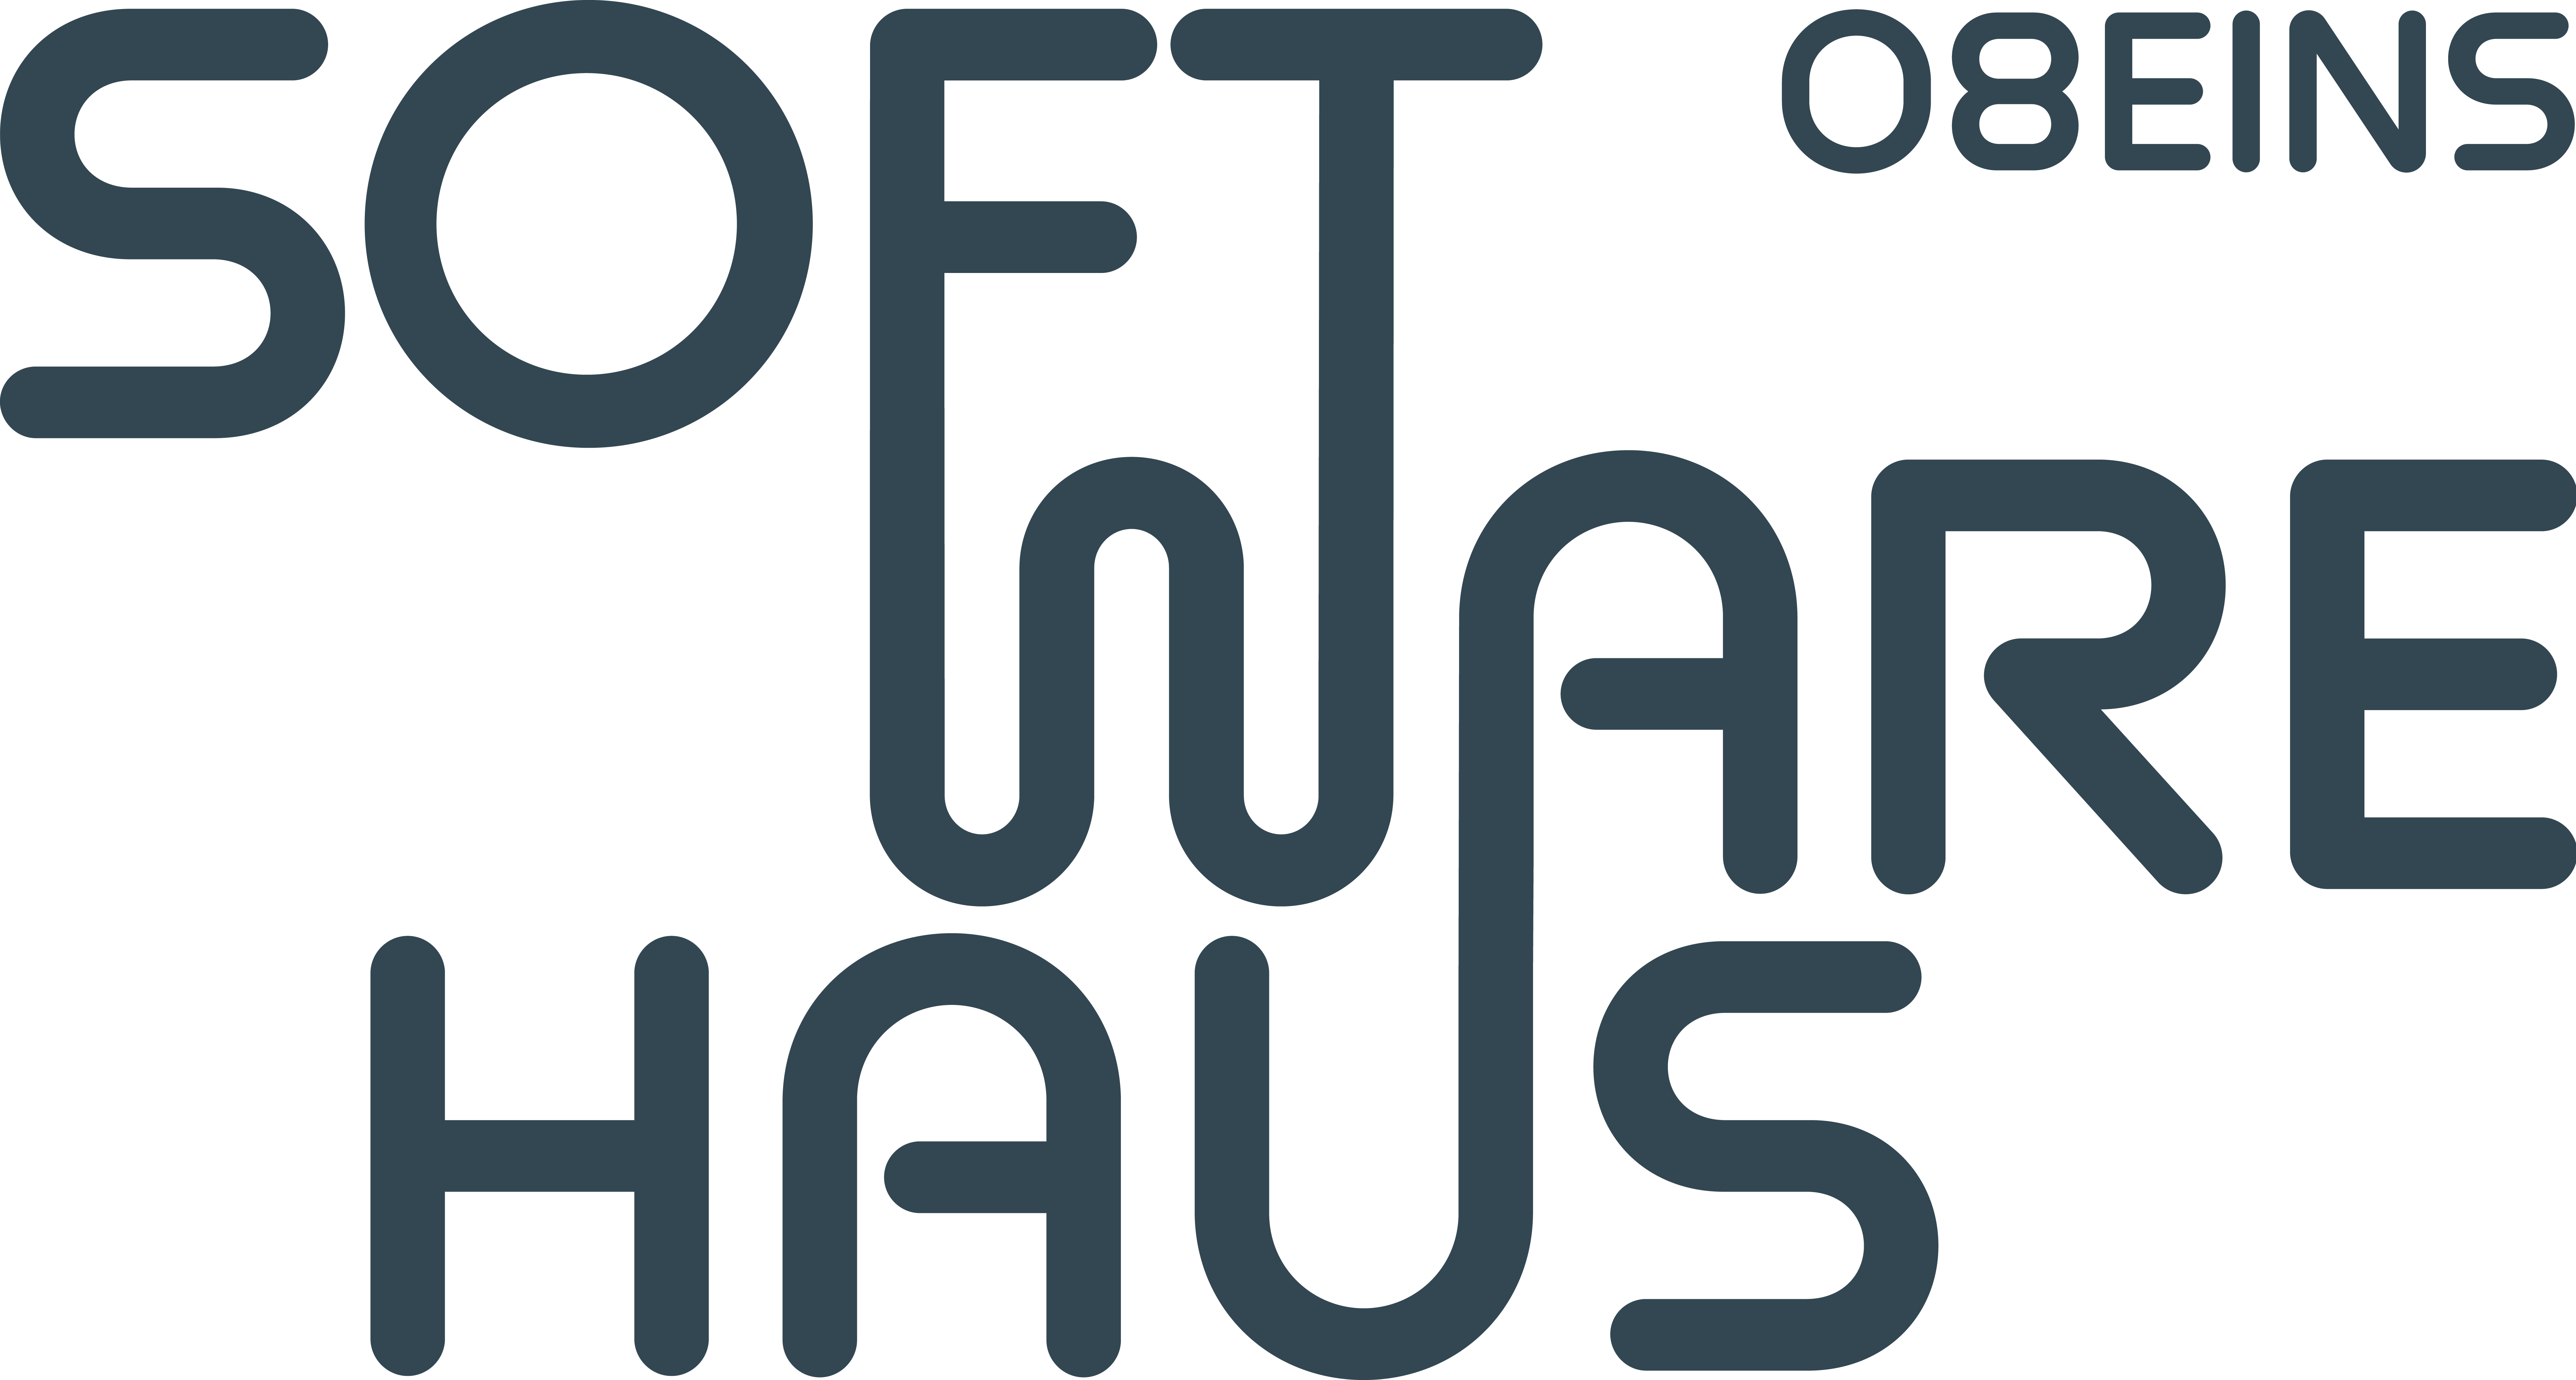 Logo Softwarehaus 08eins